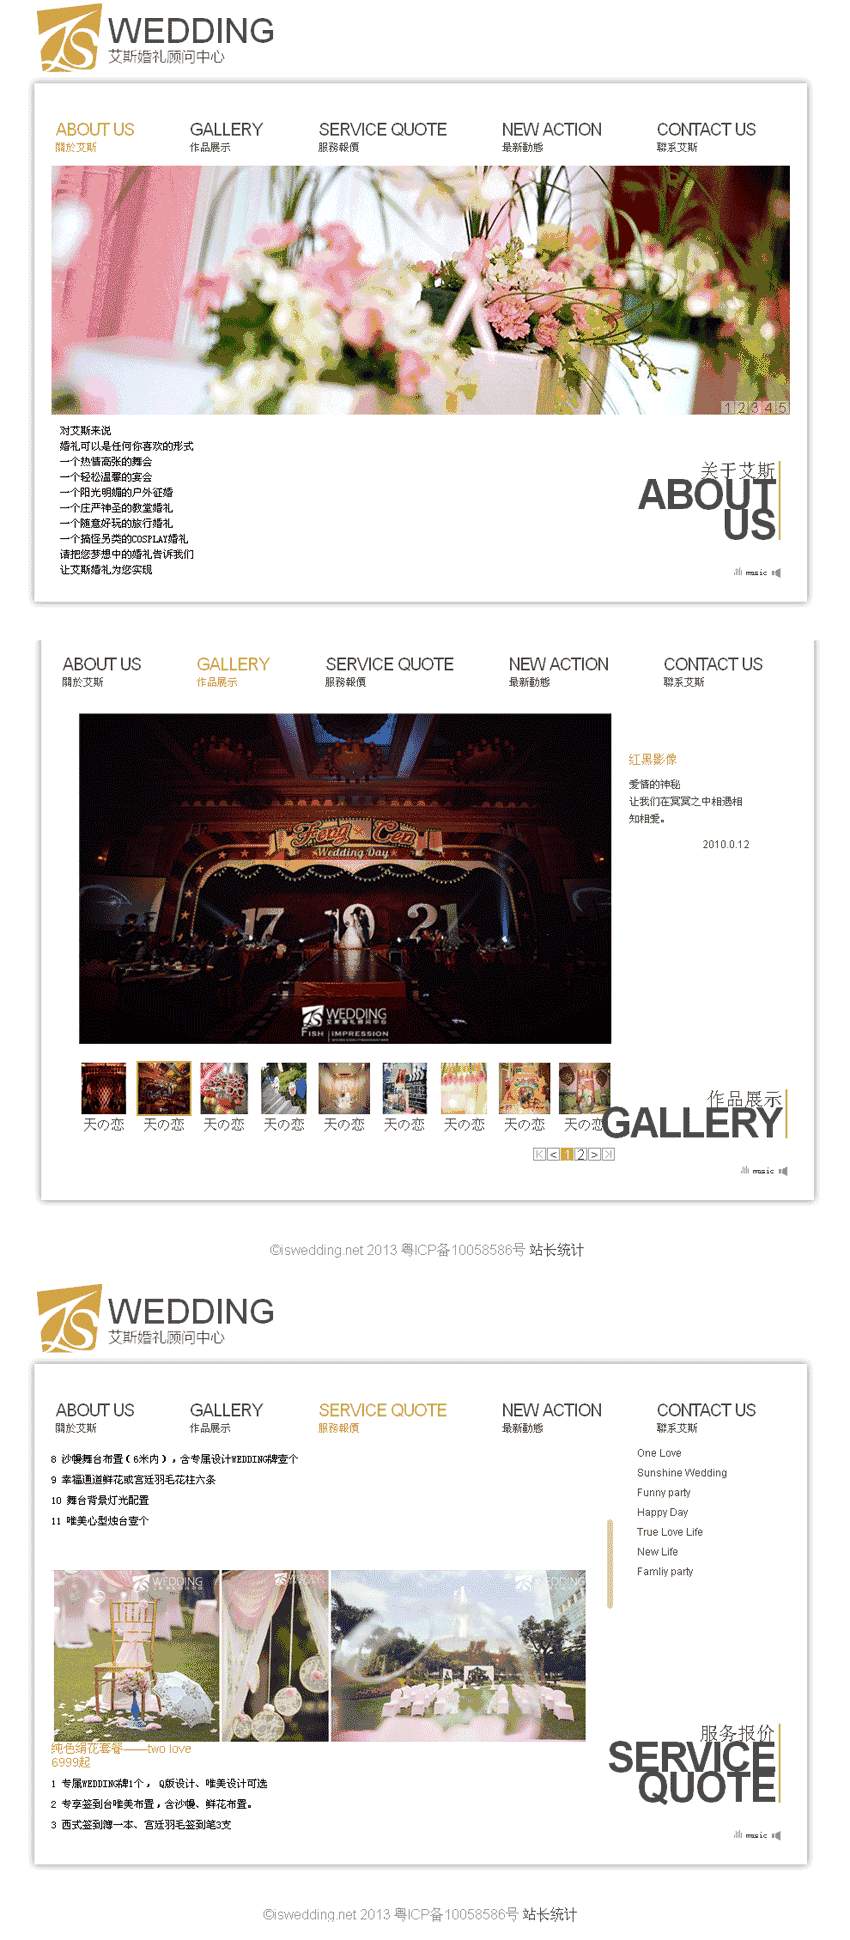 艾斯婚礼策划公司网站WordPress模板主题演示图